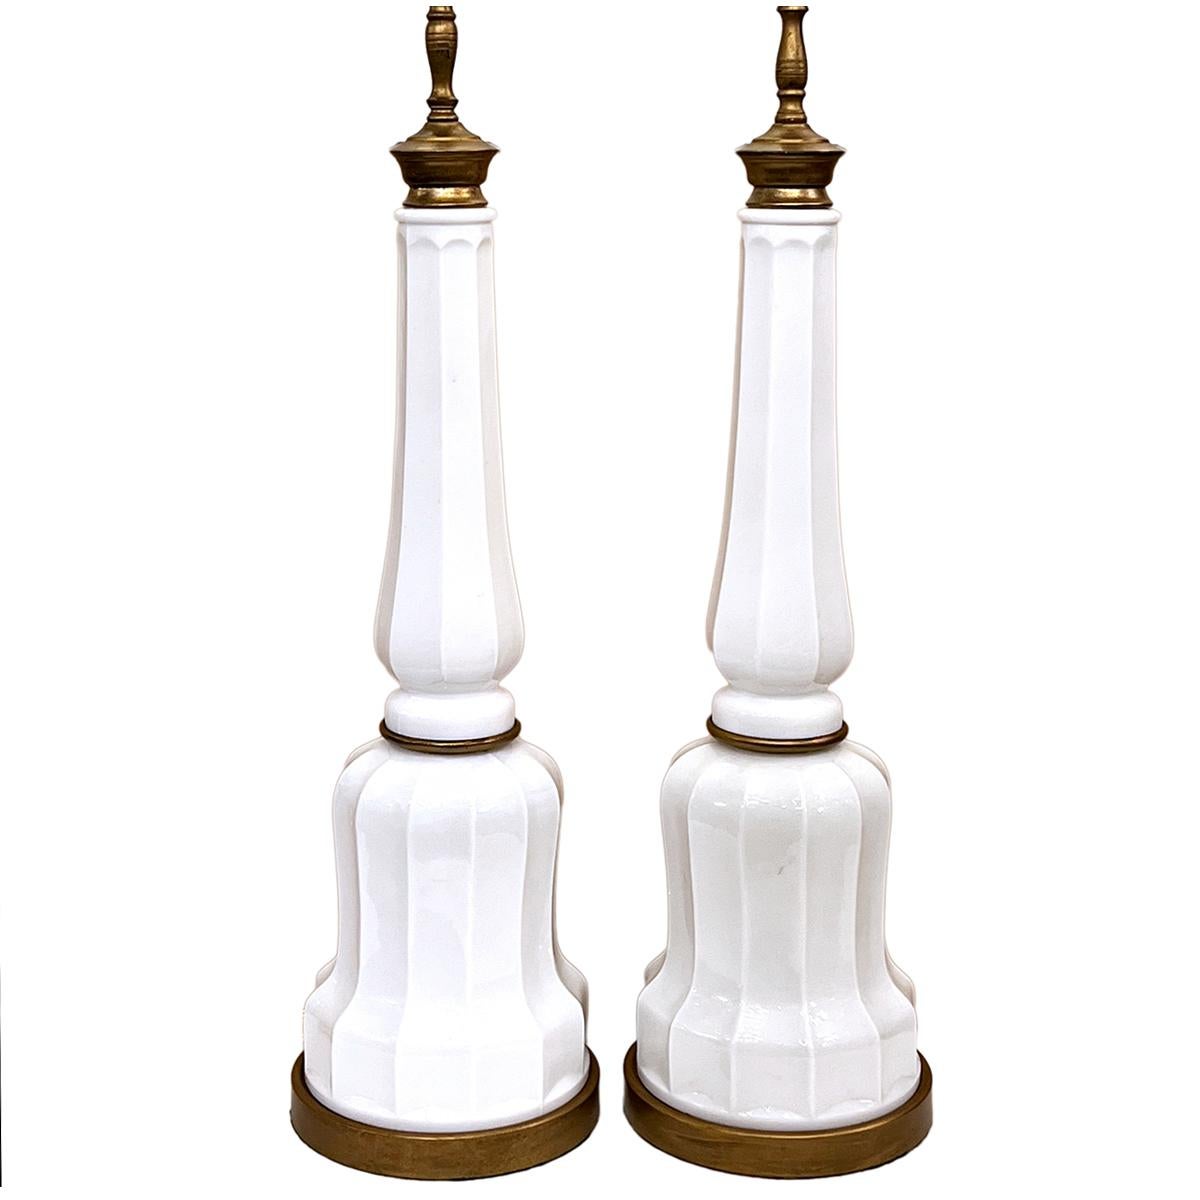 Paire de lampes de table en verre au lait anglaises des années 1920.

Mesures :
Hauteur du corps : 25
Hauteur jusqu'à l'appui de l'abat-jour : 35